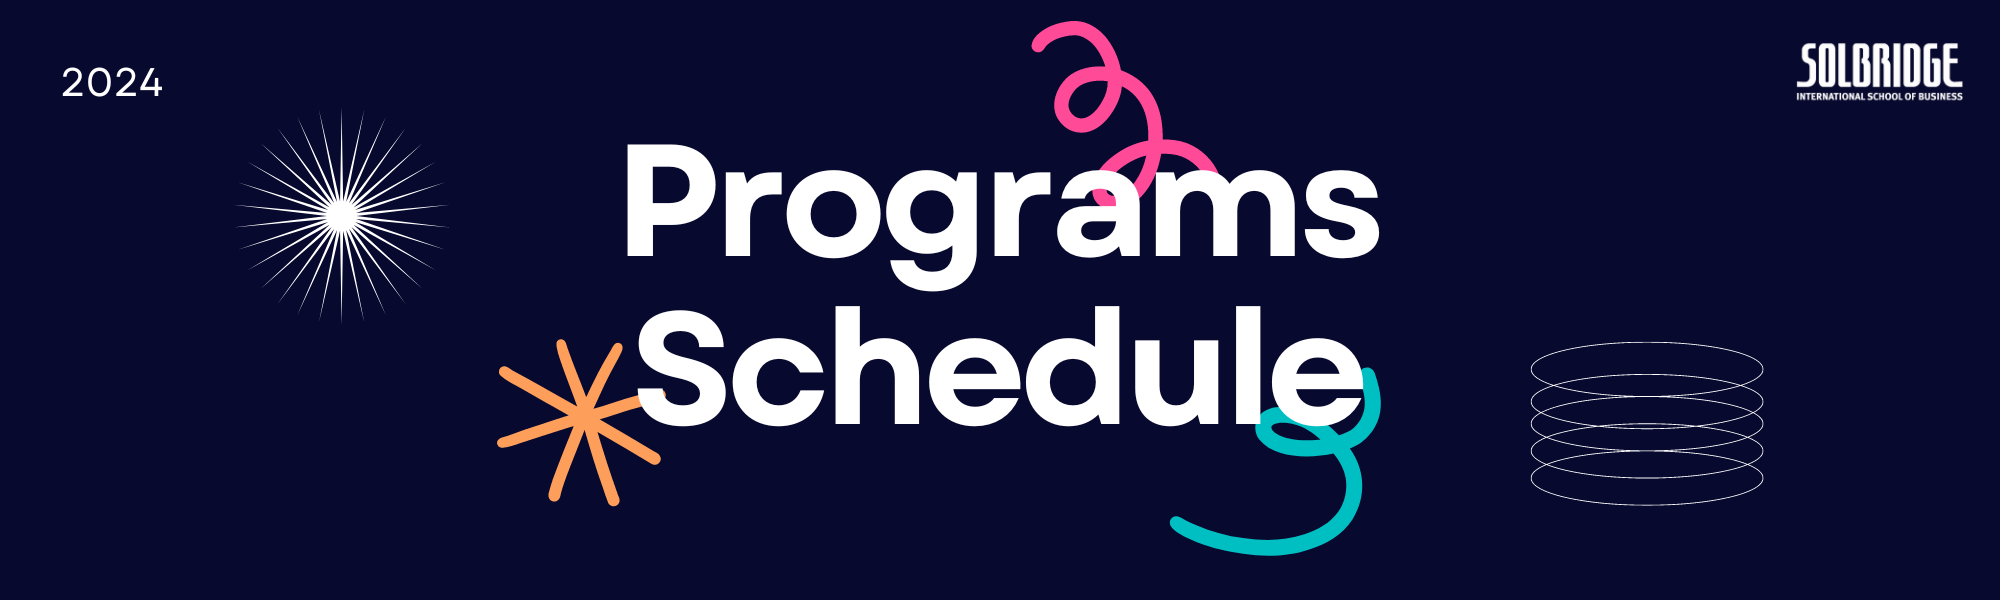 Programs Schedule 2024